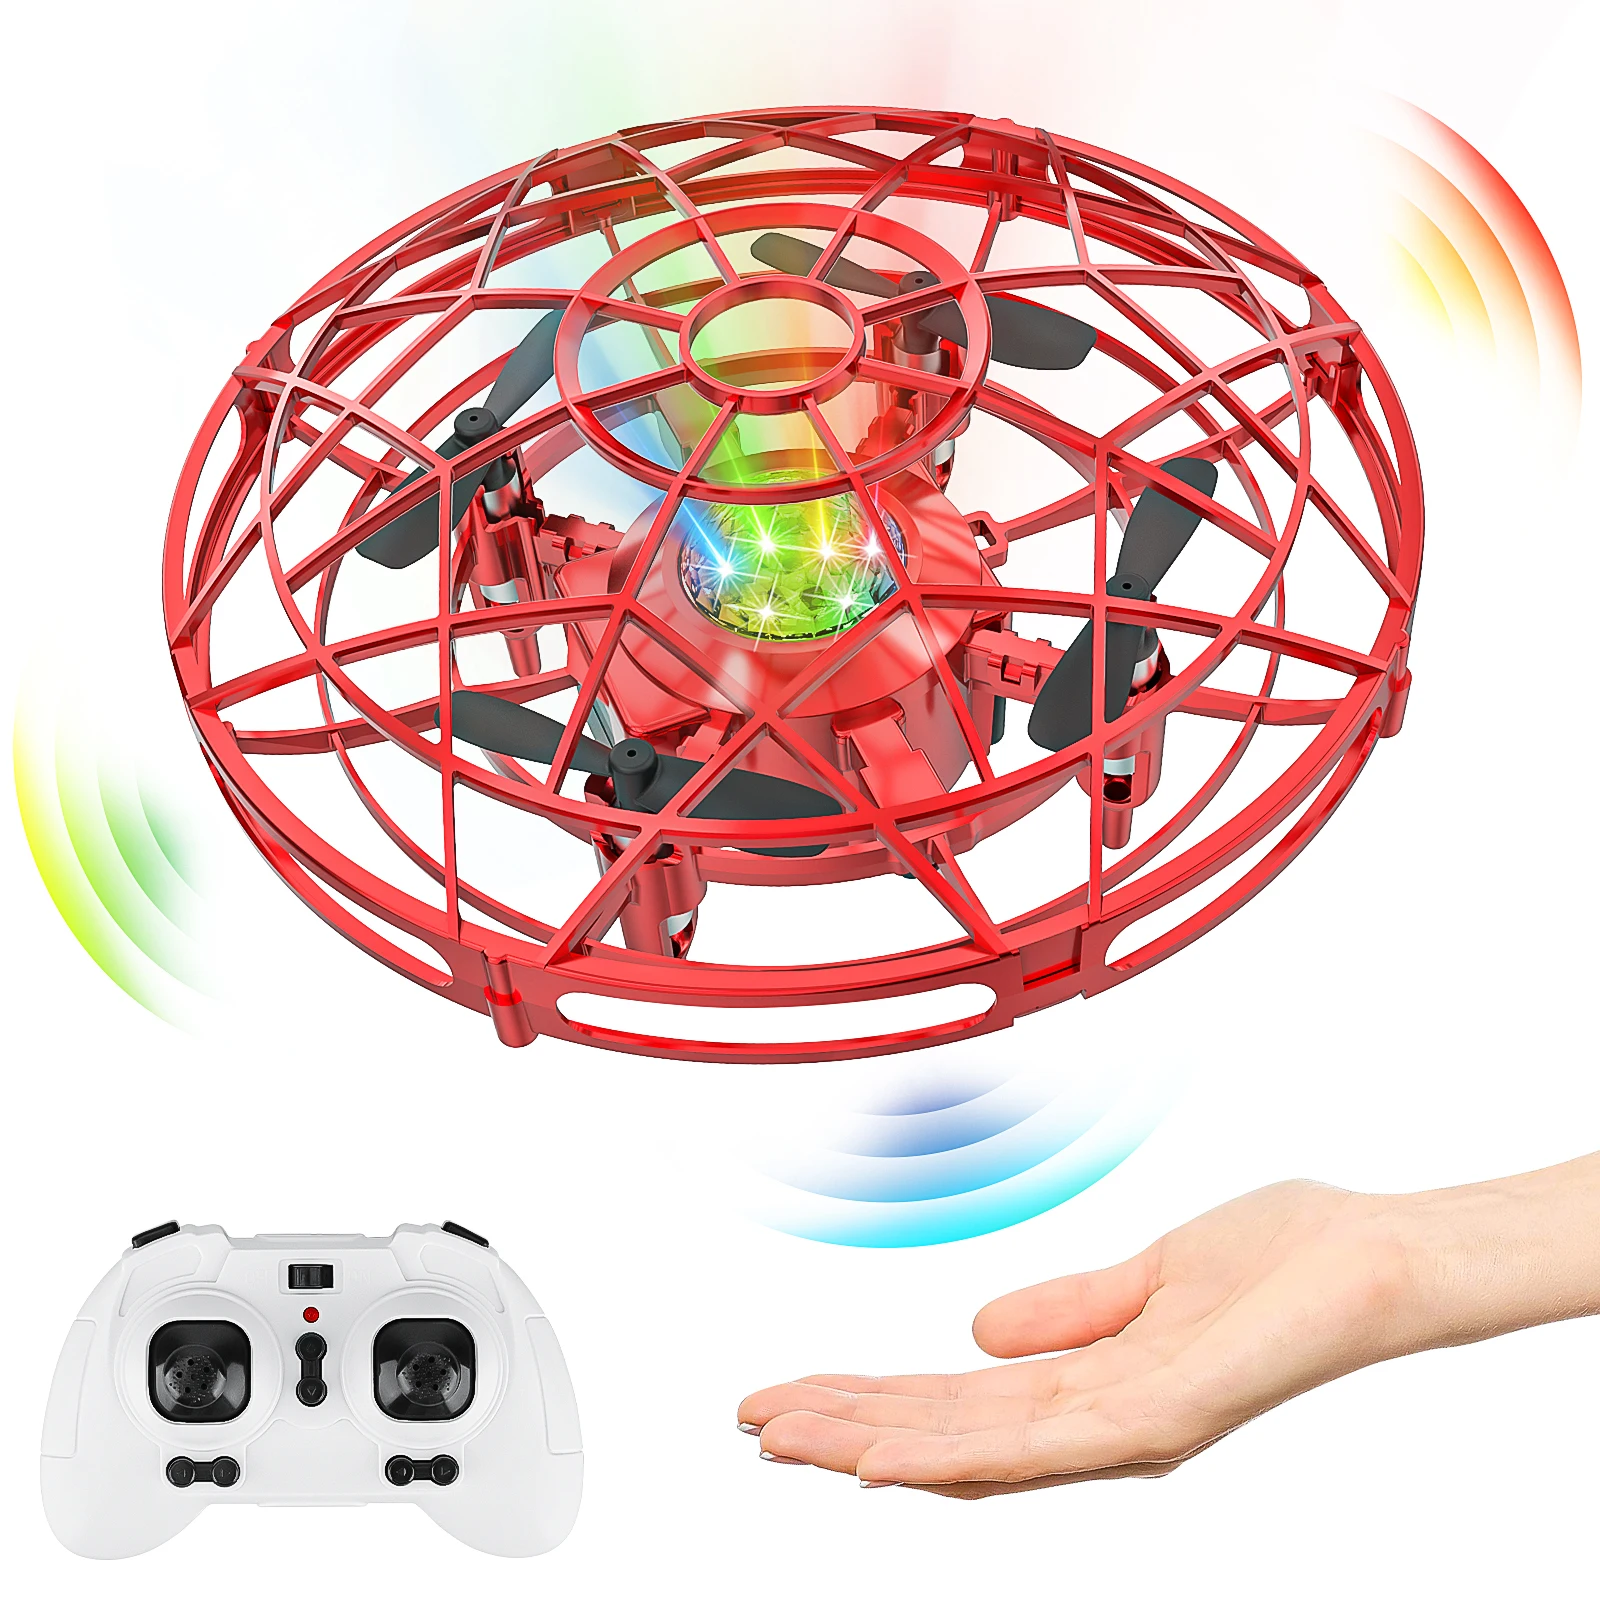 Tanio UFO Mini Drone, zabawki dla